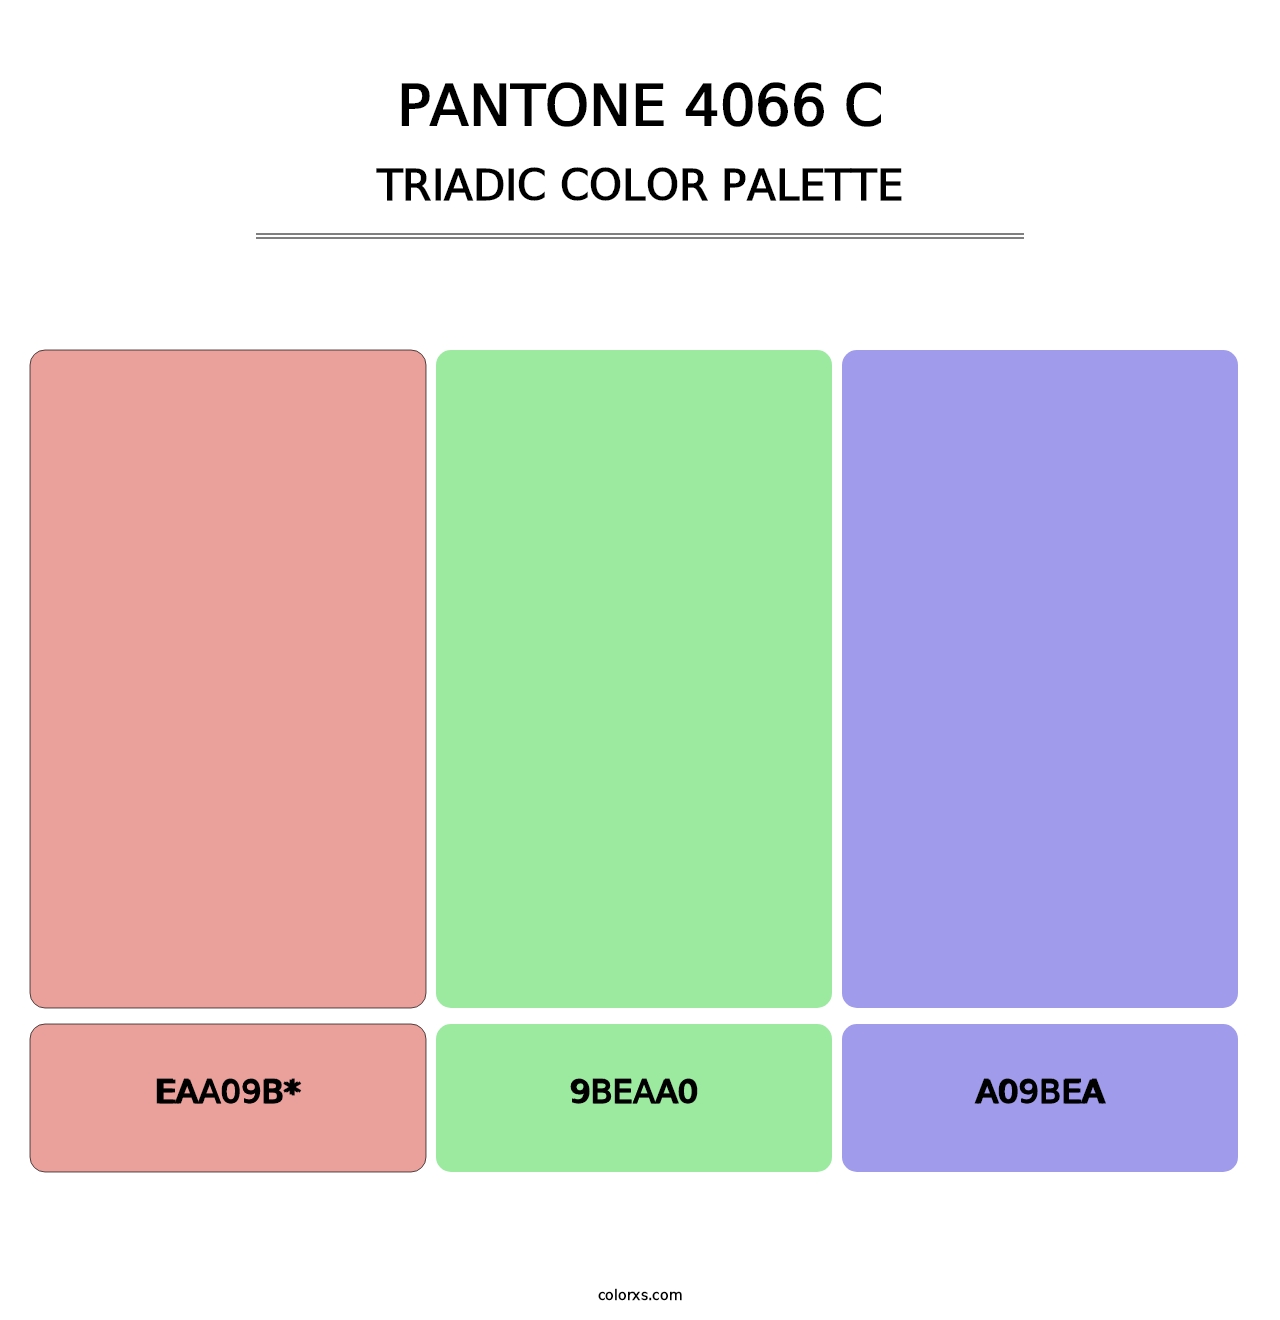 PANTONE 4066 C - Triadic Color Palette